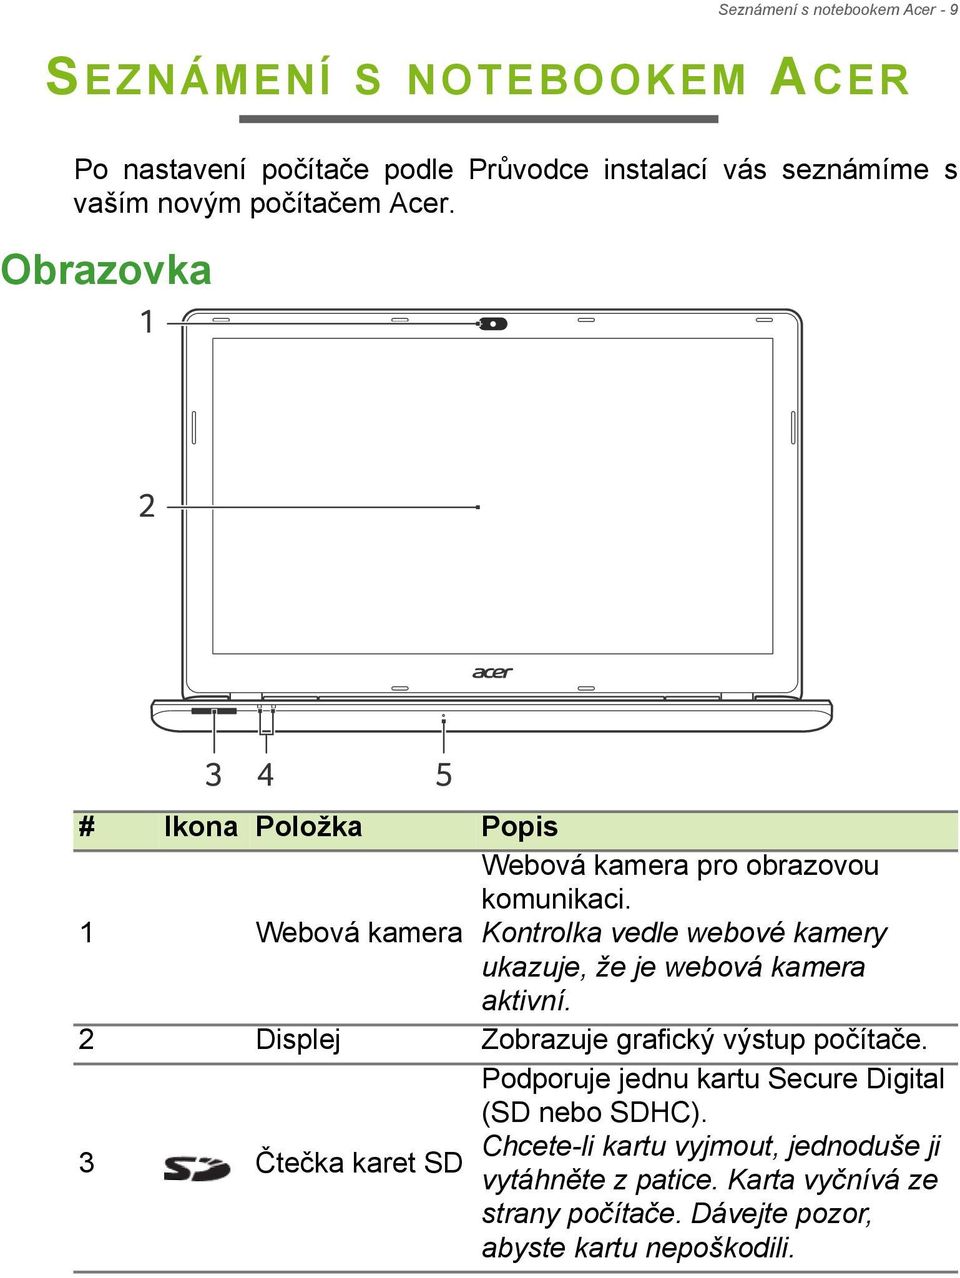 Kontrolka vedle webové kamery ukazuje, že je webová kamera aktivní. 2 Displej Zobrazuje grafický výstup počítače.